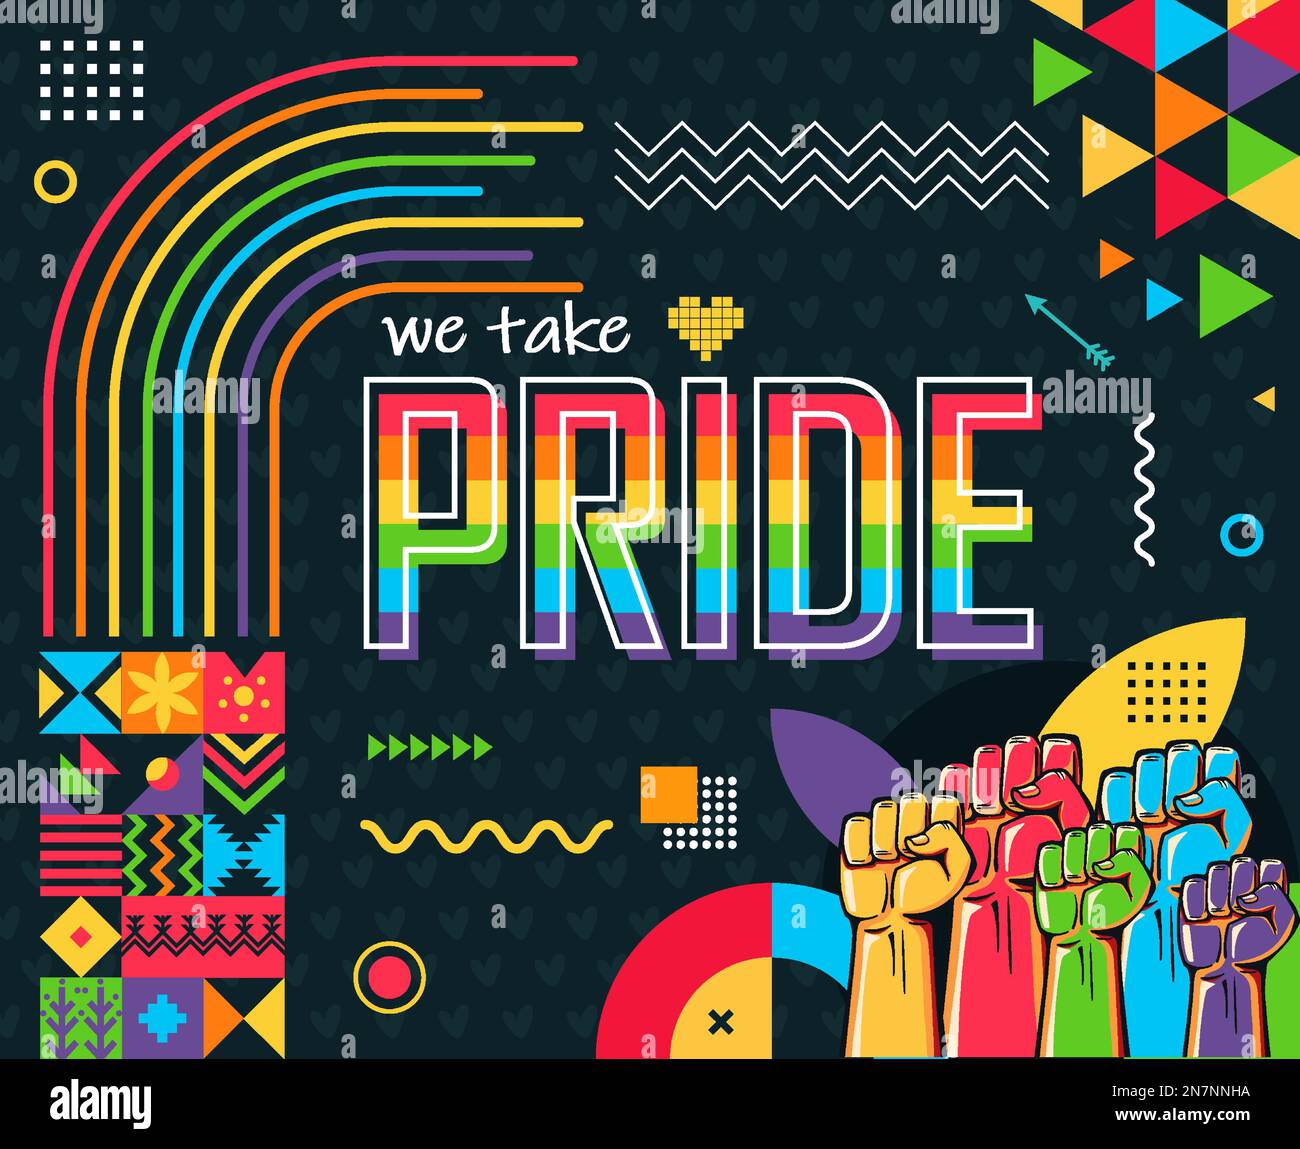 Motif fierté de soutenir le jour avec un arrière-plan moderne abstrait. Droits LGBTQ Rainbow coloré. Lesbiennes, gays, bisexuels, transgenres, queer. Drapeau communautaire LGBTQ. Illustration de Vecteur